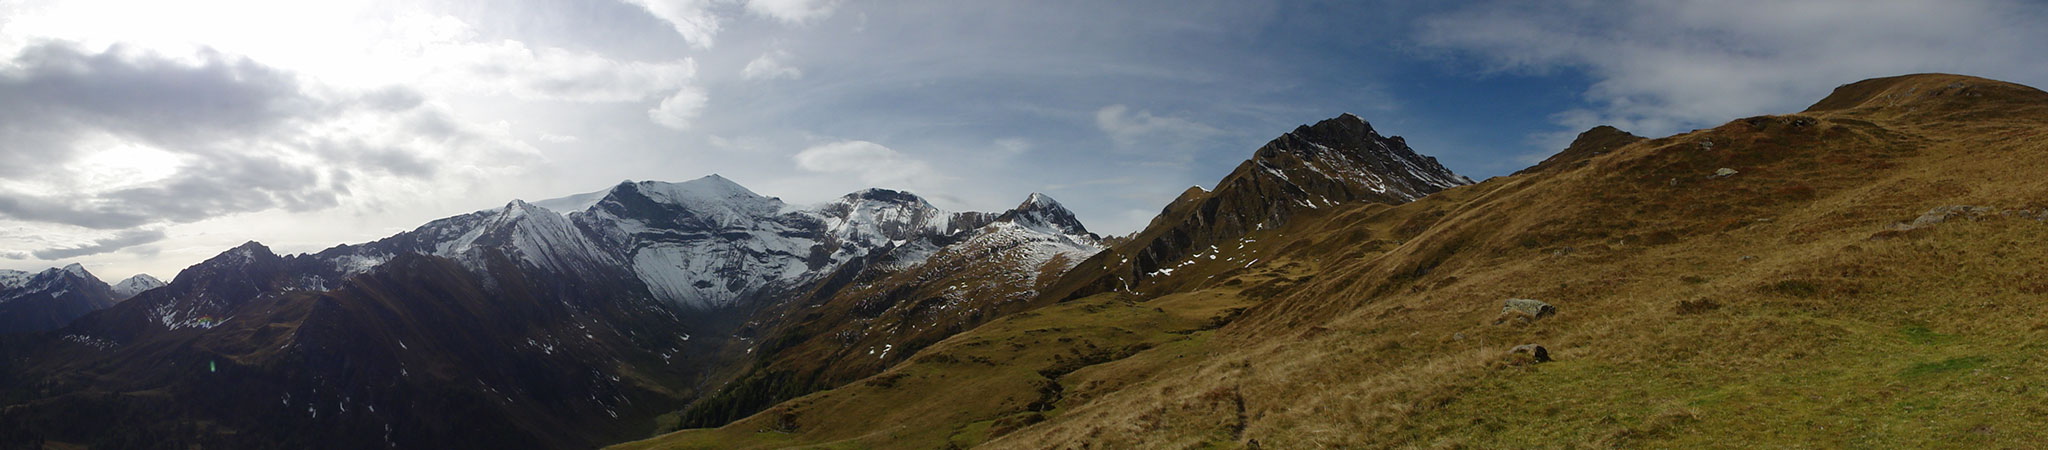 Arnoweg: Herbstliche Bergwiesen vor dem bereits verschneiten Gipfel des Hohen Tenn (3368 m)